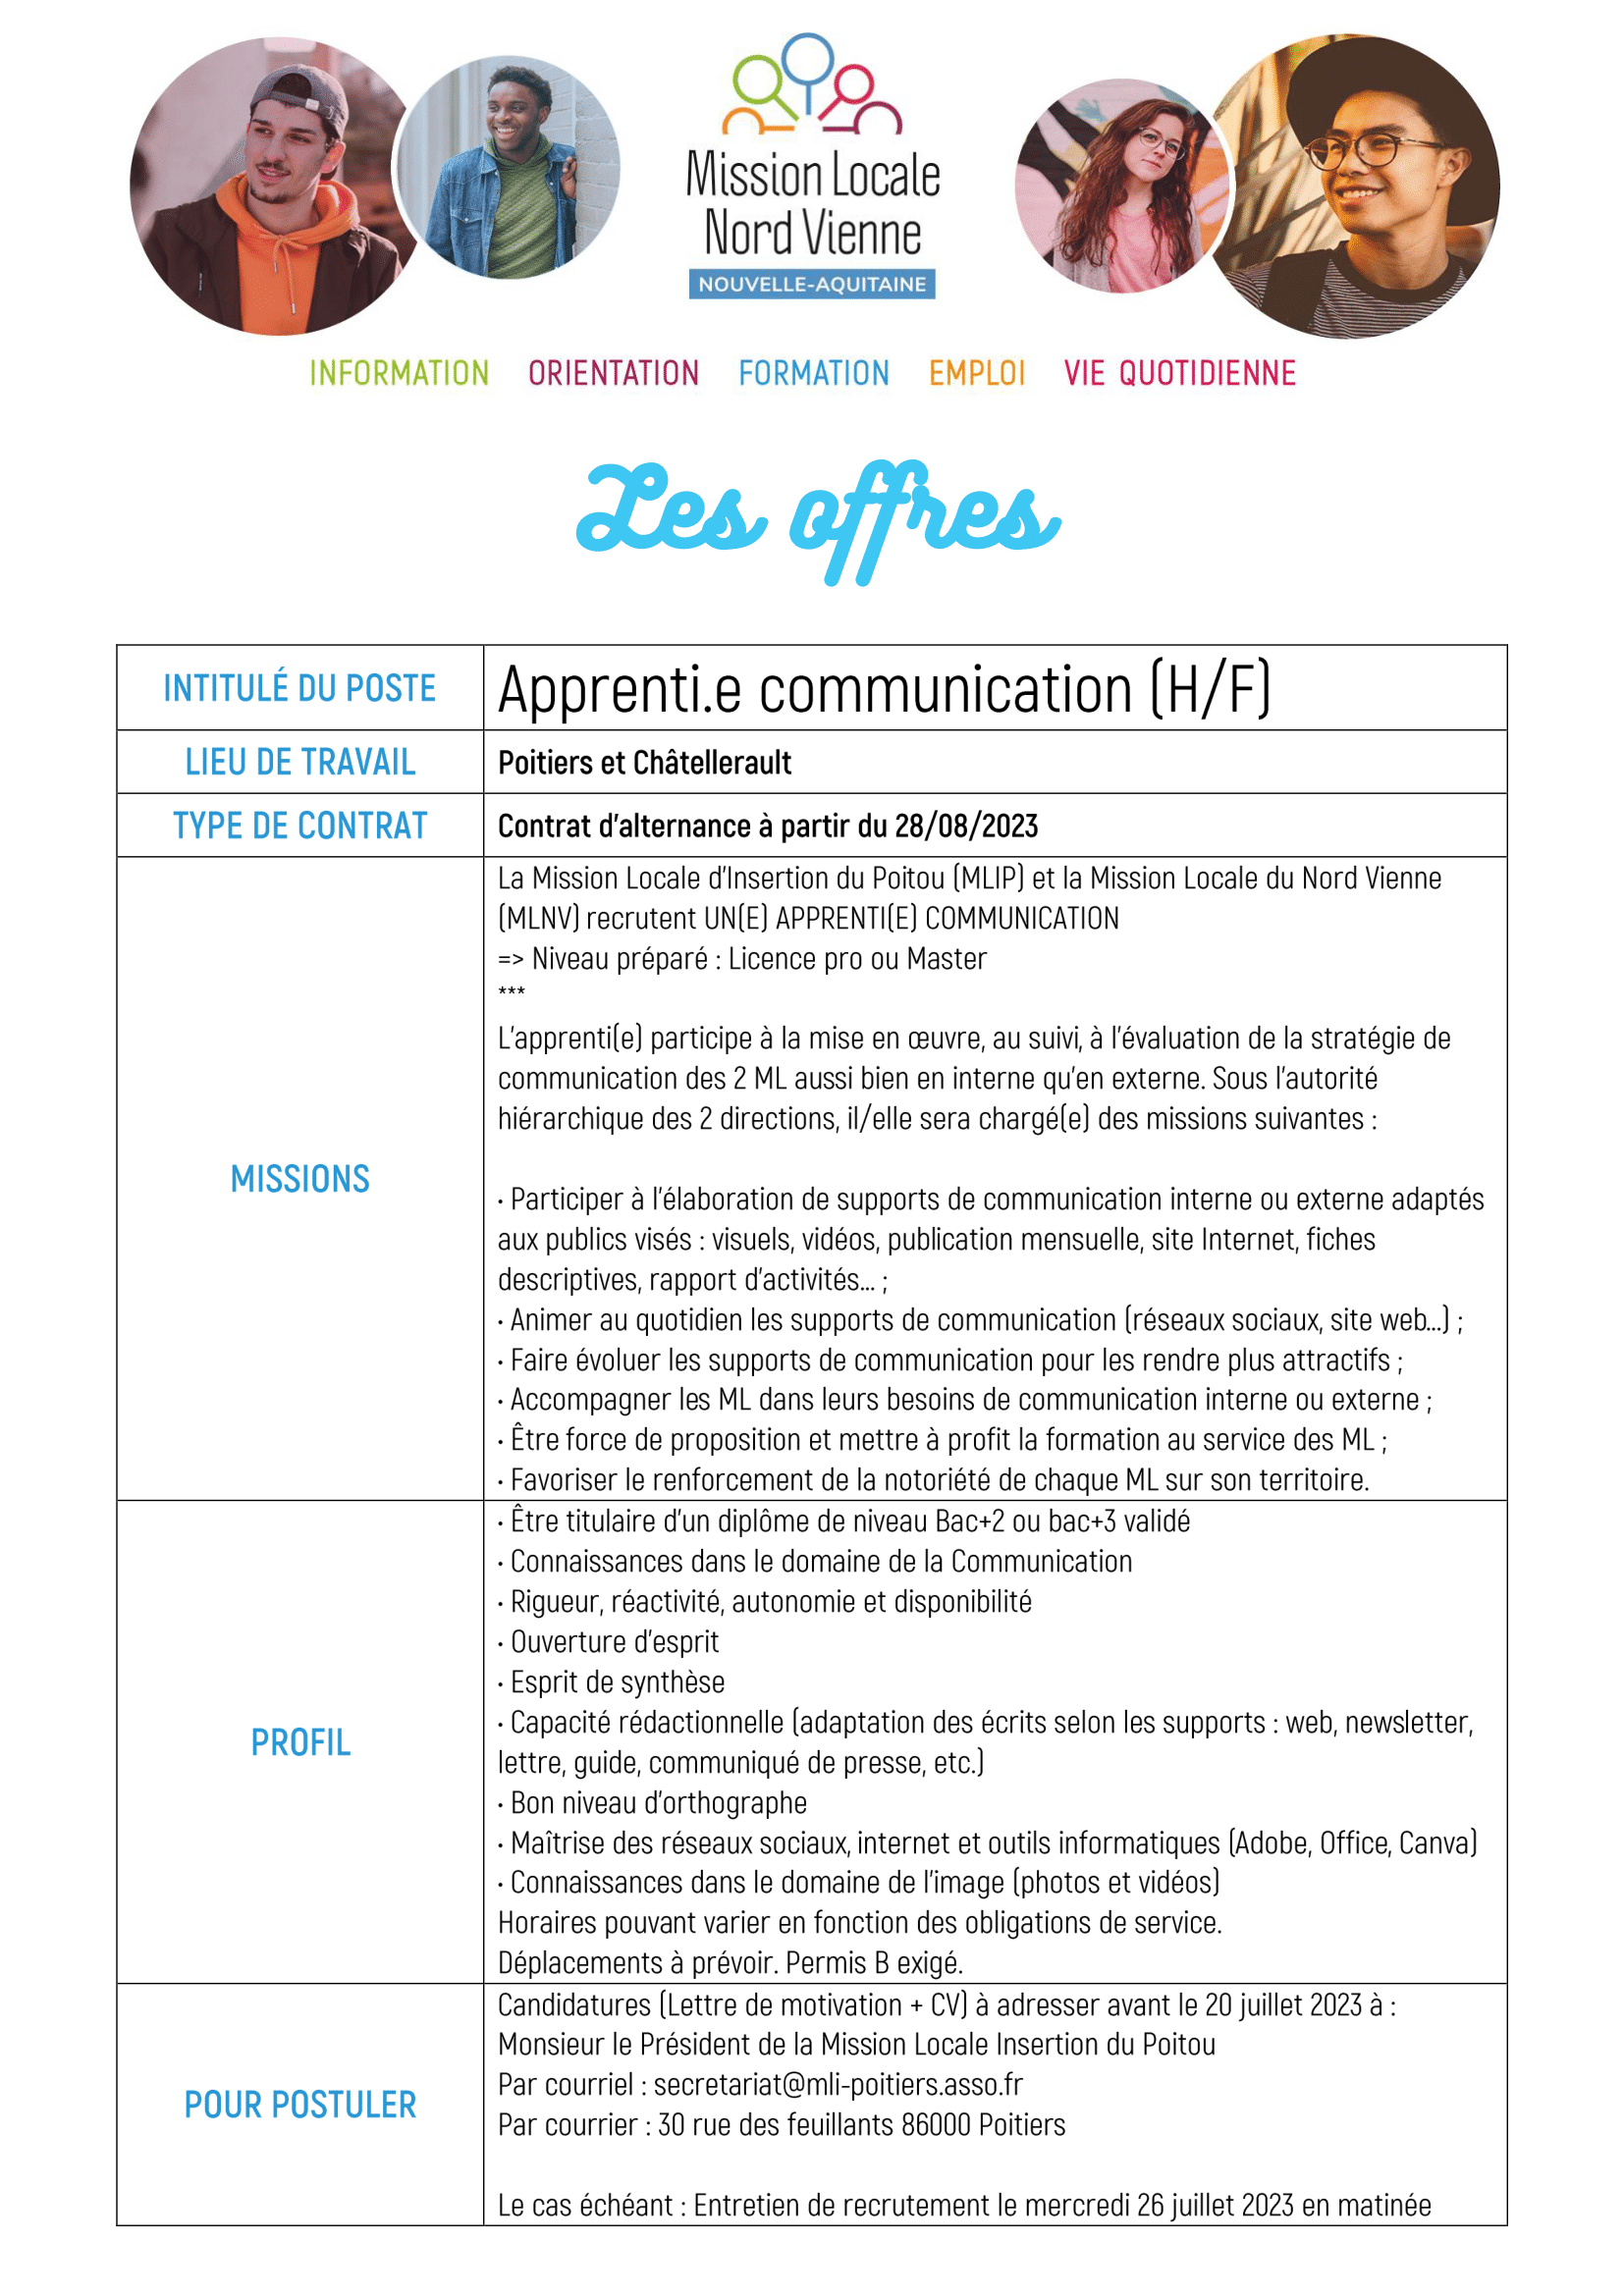 Apprenti.e communication (H/F)